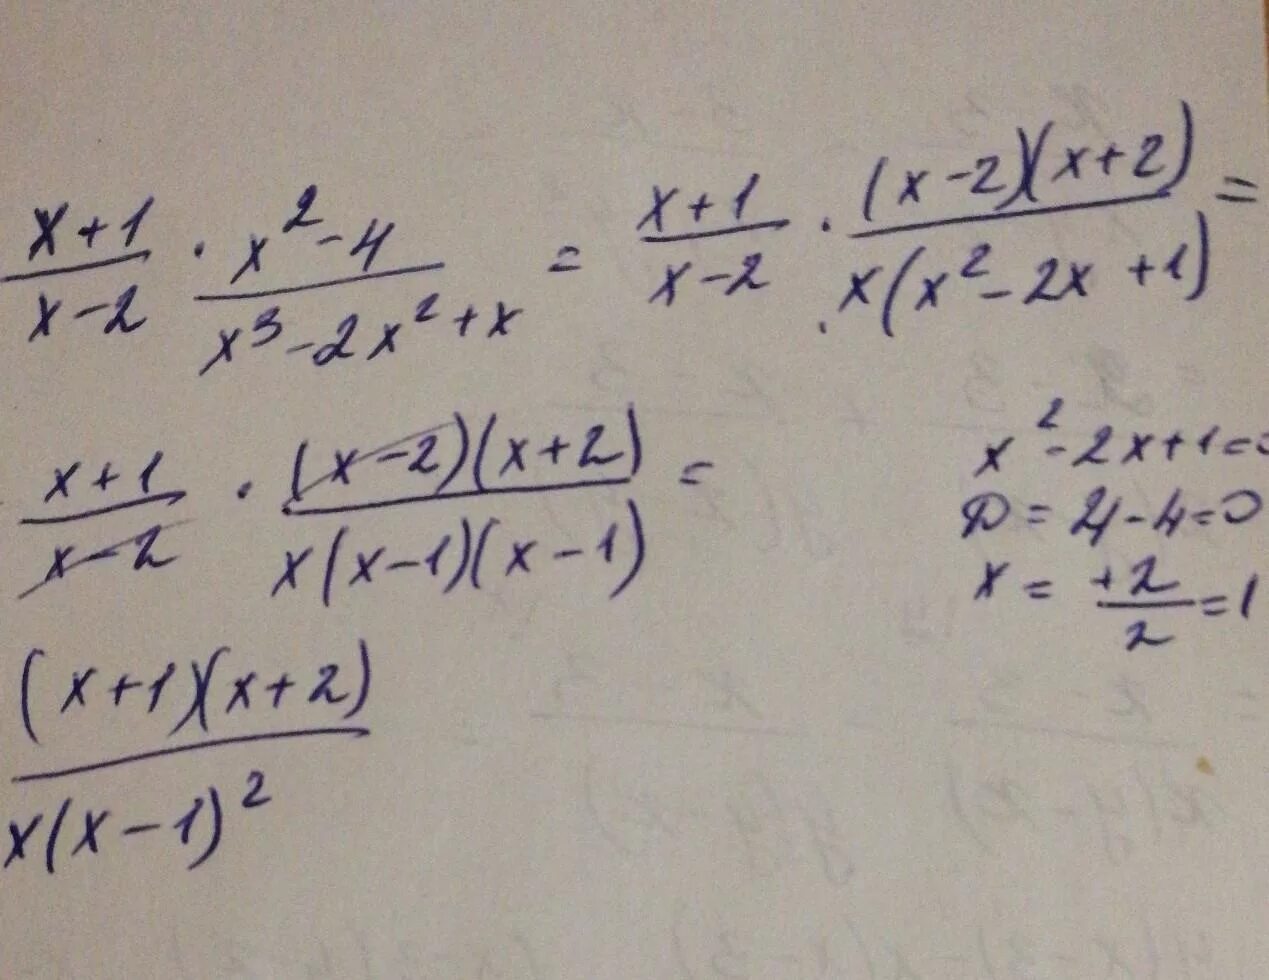 2x 1x 3x 4. Упростите выражение (x-1) (x 2+1) +(3-x) (9+3x+x 2). Упростите выражение x2/x2-1 x/x+1. X*(X^2+X)+(-X^2-X-1) упростите. Упростить (x+1)(x+2).